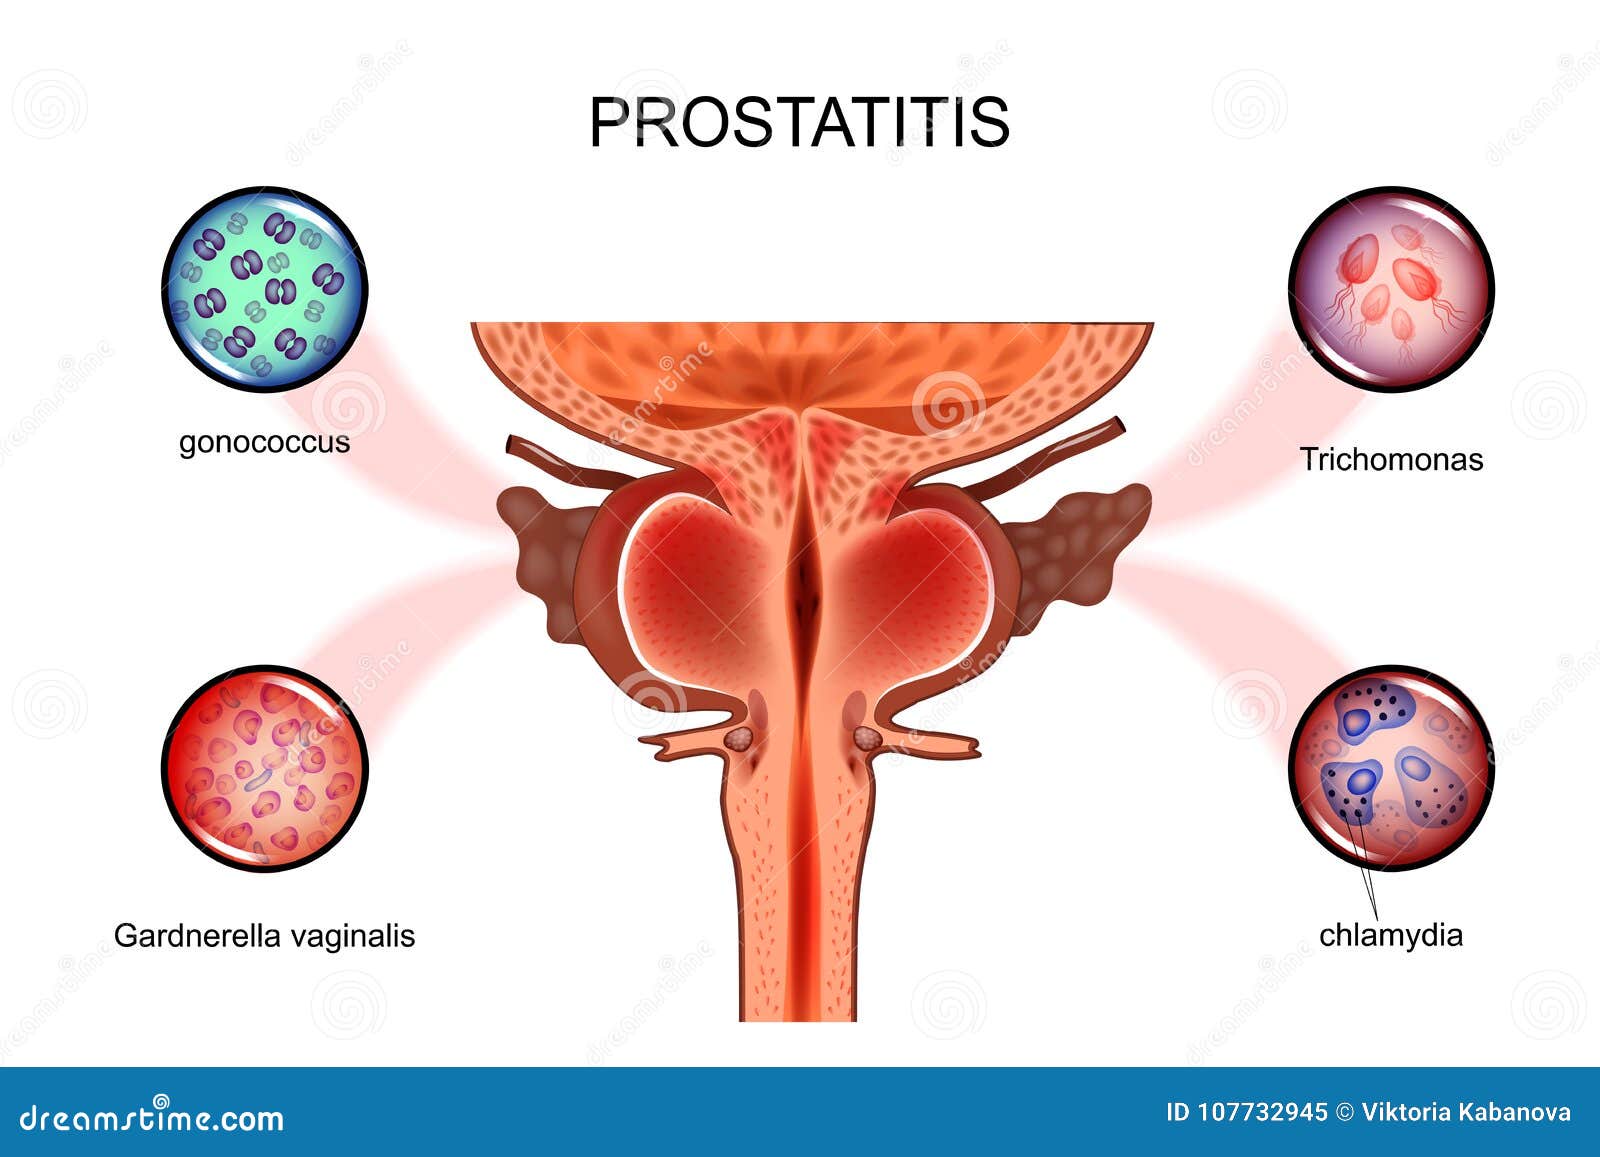 lehet a prostatitis 18 c- on)